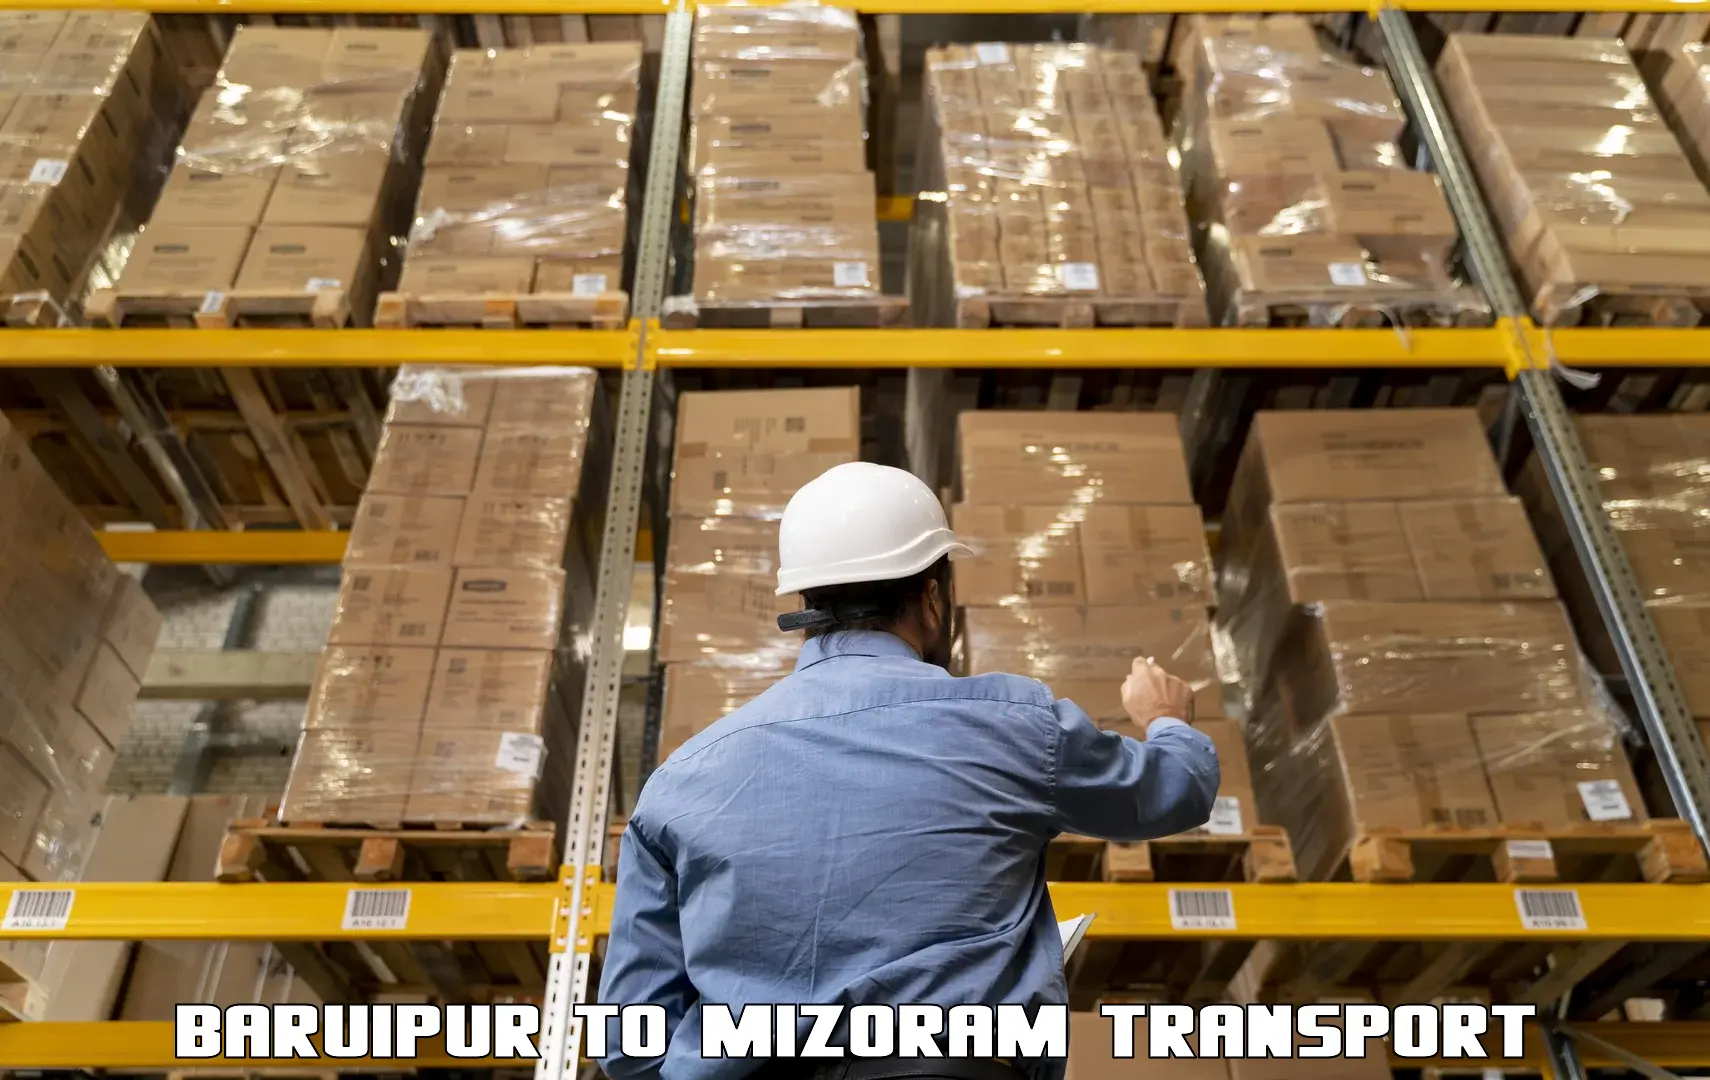 Container transport service Baruipur to Mizoram